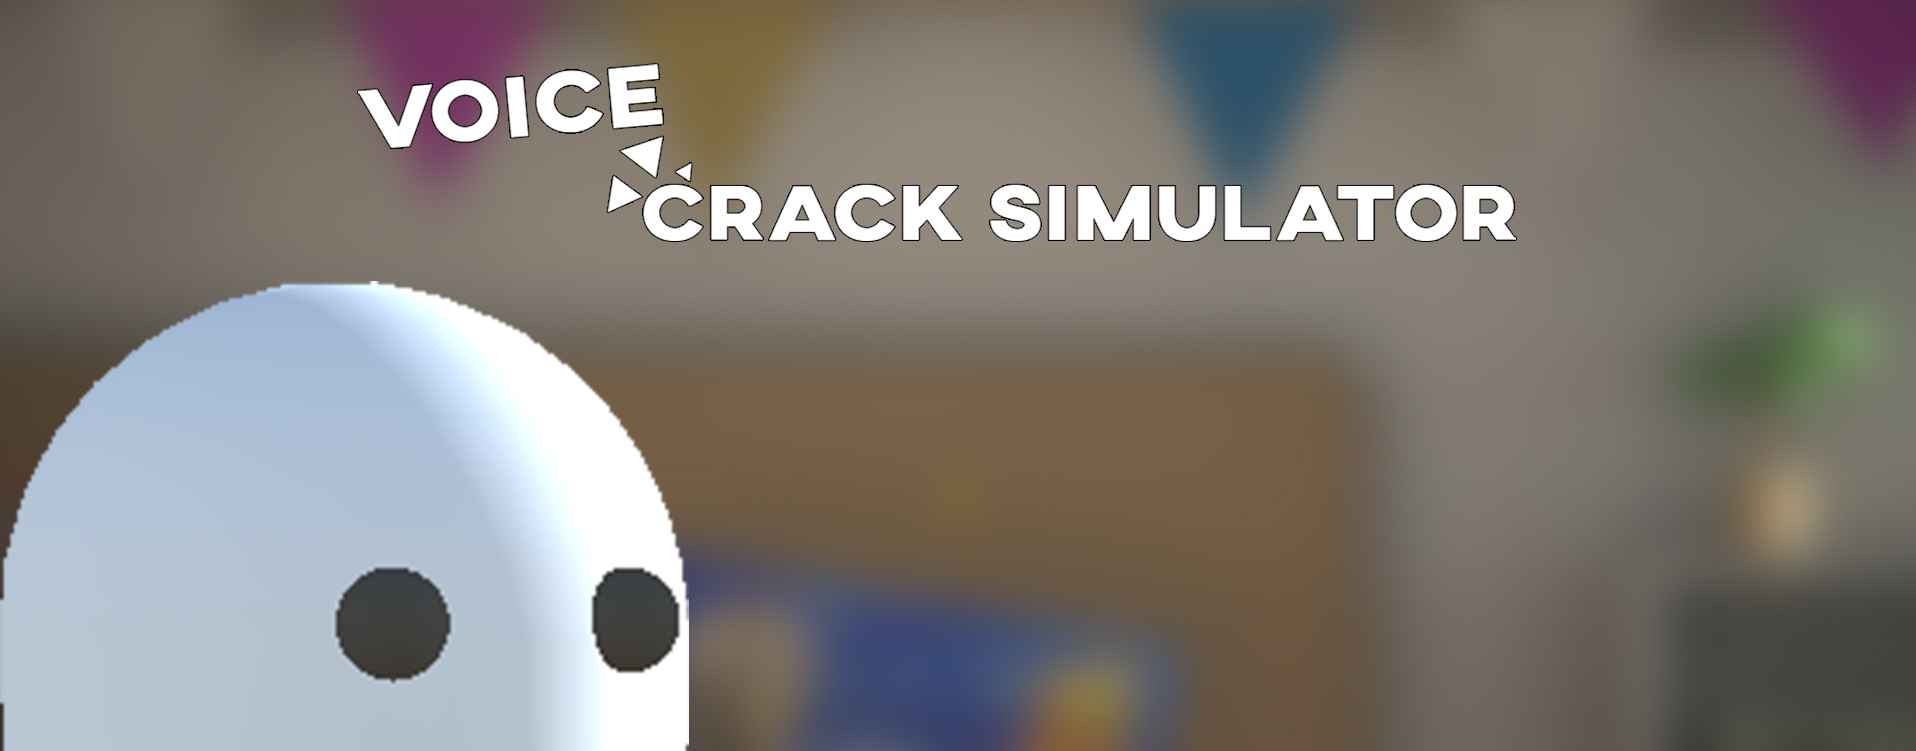 Voice Crack Simulator